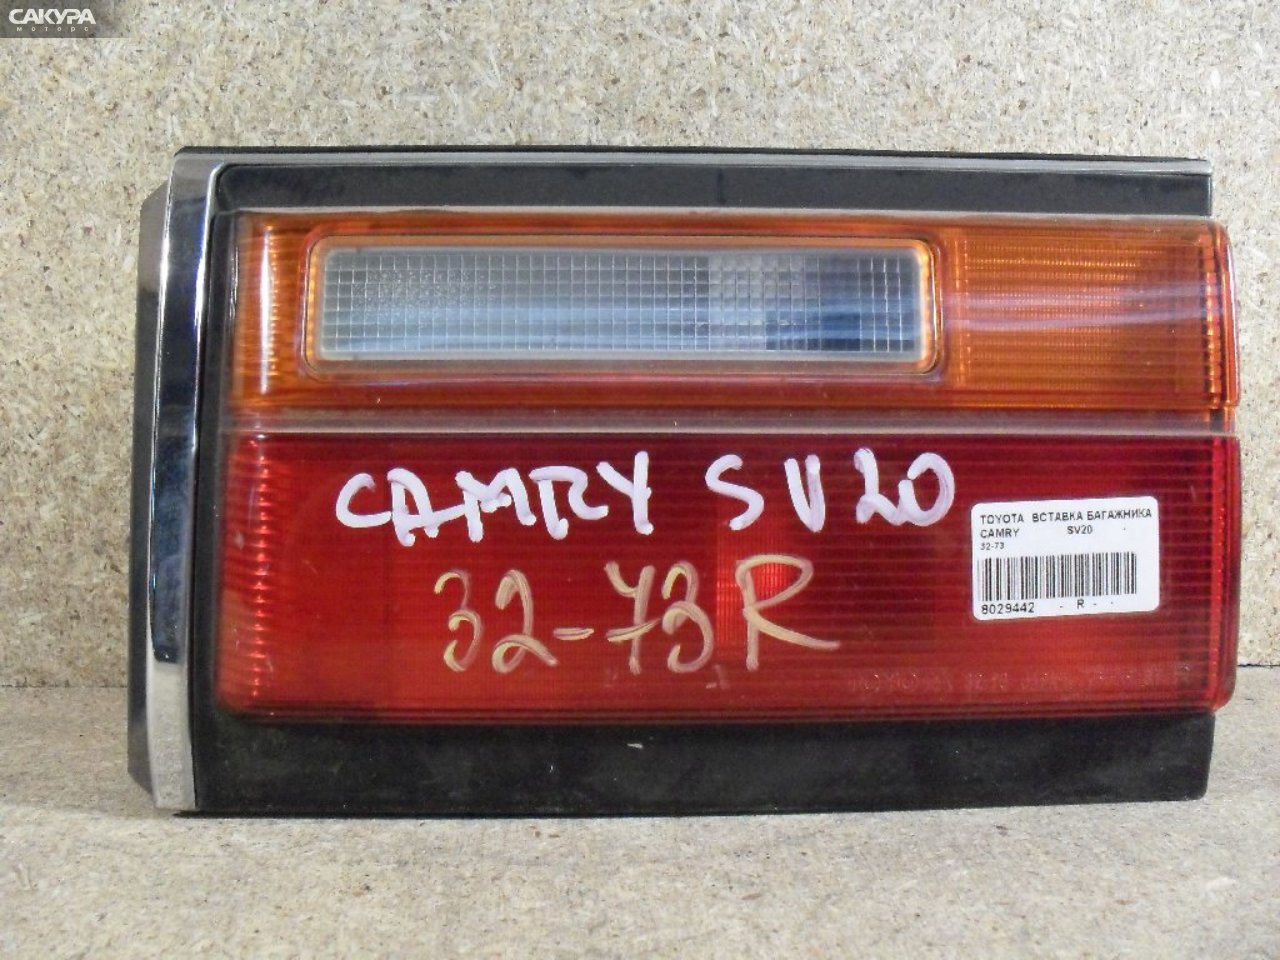 Фонарь вставка багажника правый Toyota Camry SV20 32-73: купить в Сакура Абакан.